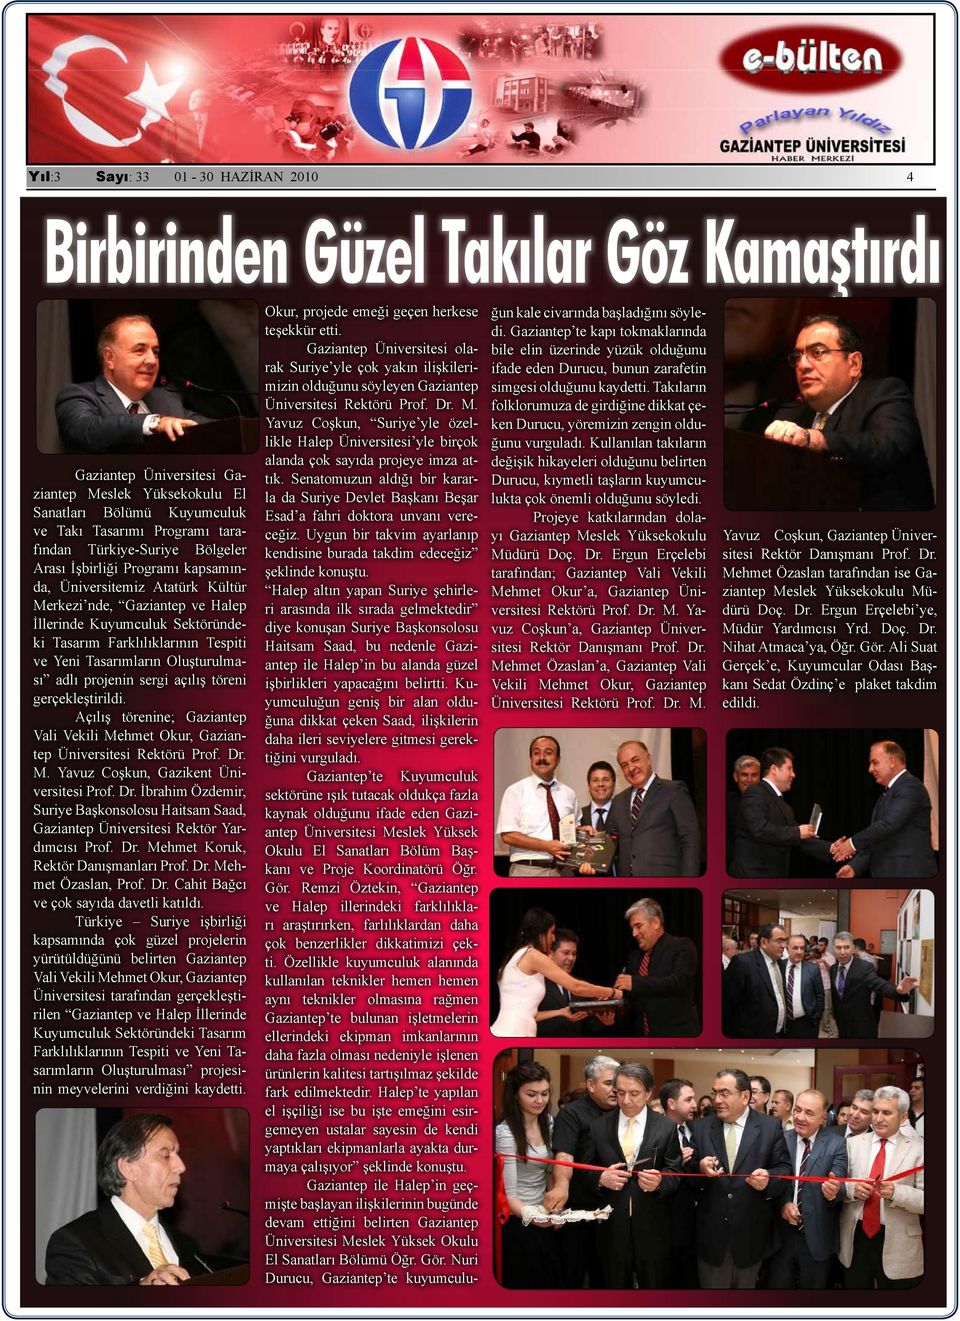 adlı projenin sergi açılış töreni gerçekleştirildi. Açılış törenine; Gaziantep Vali Vekili Mehmet Okur, Gaziantep Üniversitesi Rektörü Prof. Dr.